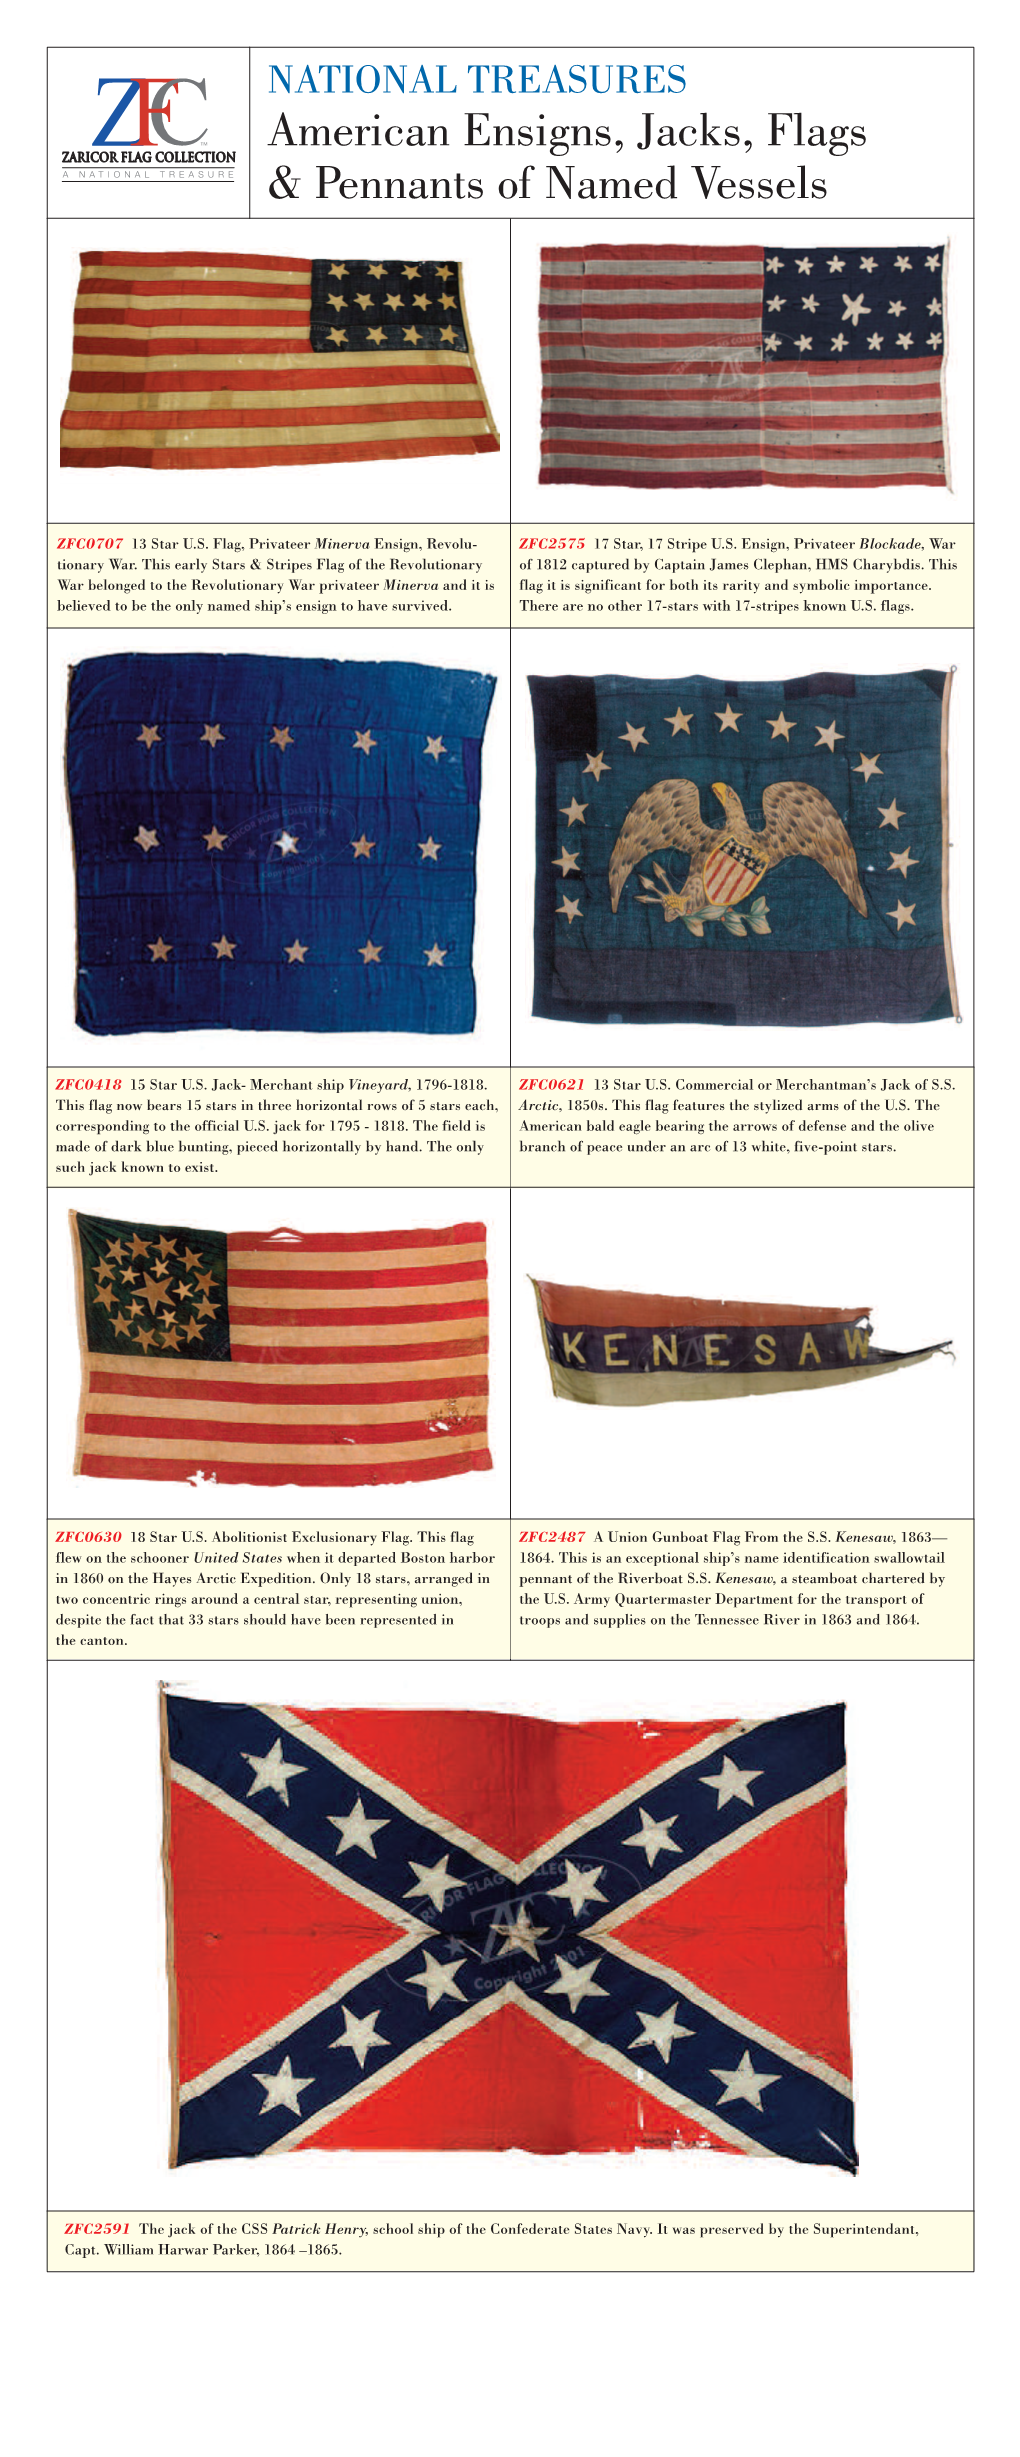 American Ensigns, Jacks, Flags & Pennants of Named Vessels